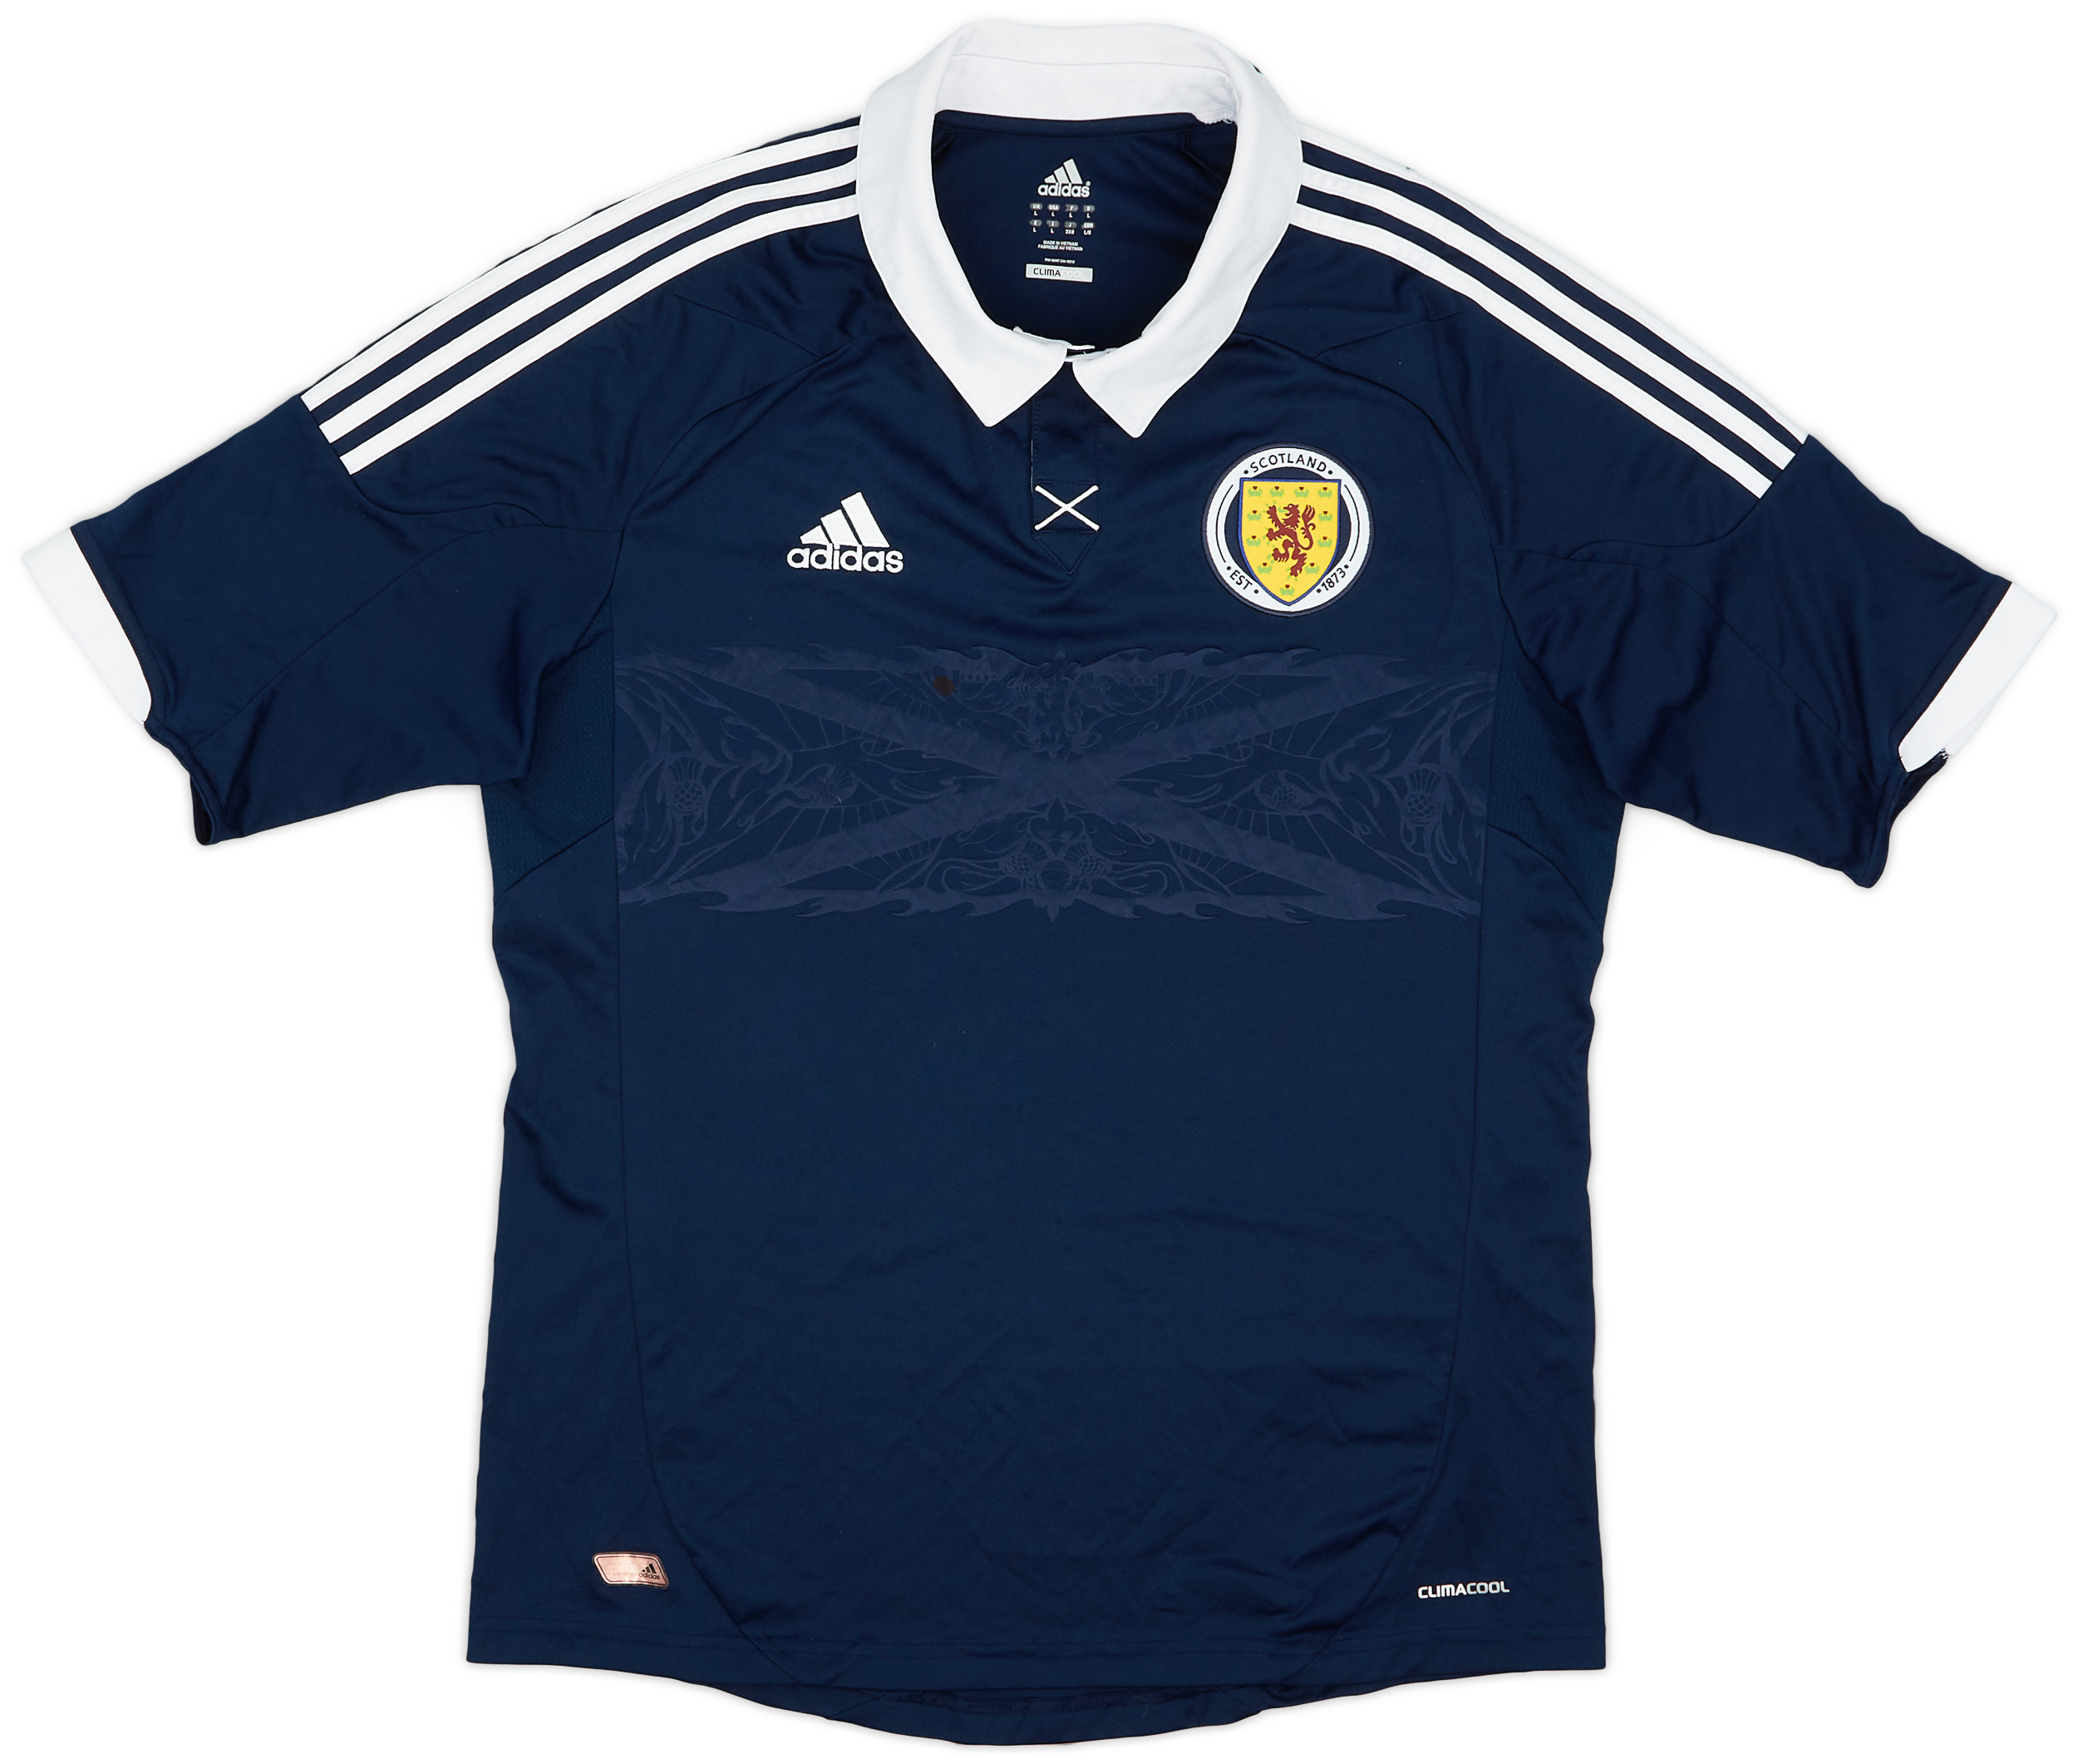 2011-13 Scotland Home Shirt - 5/10 - ()